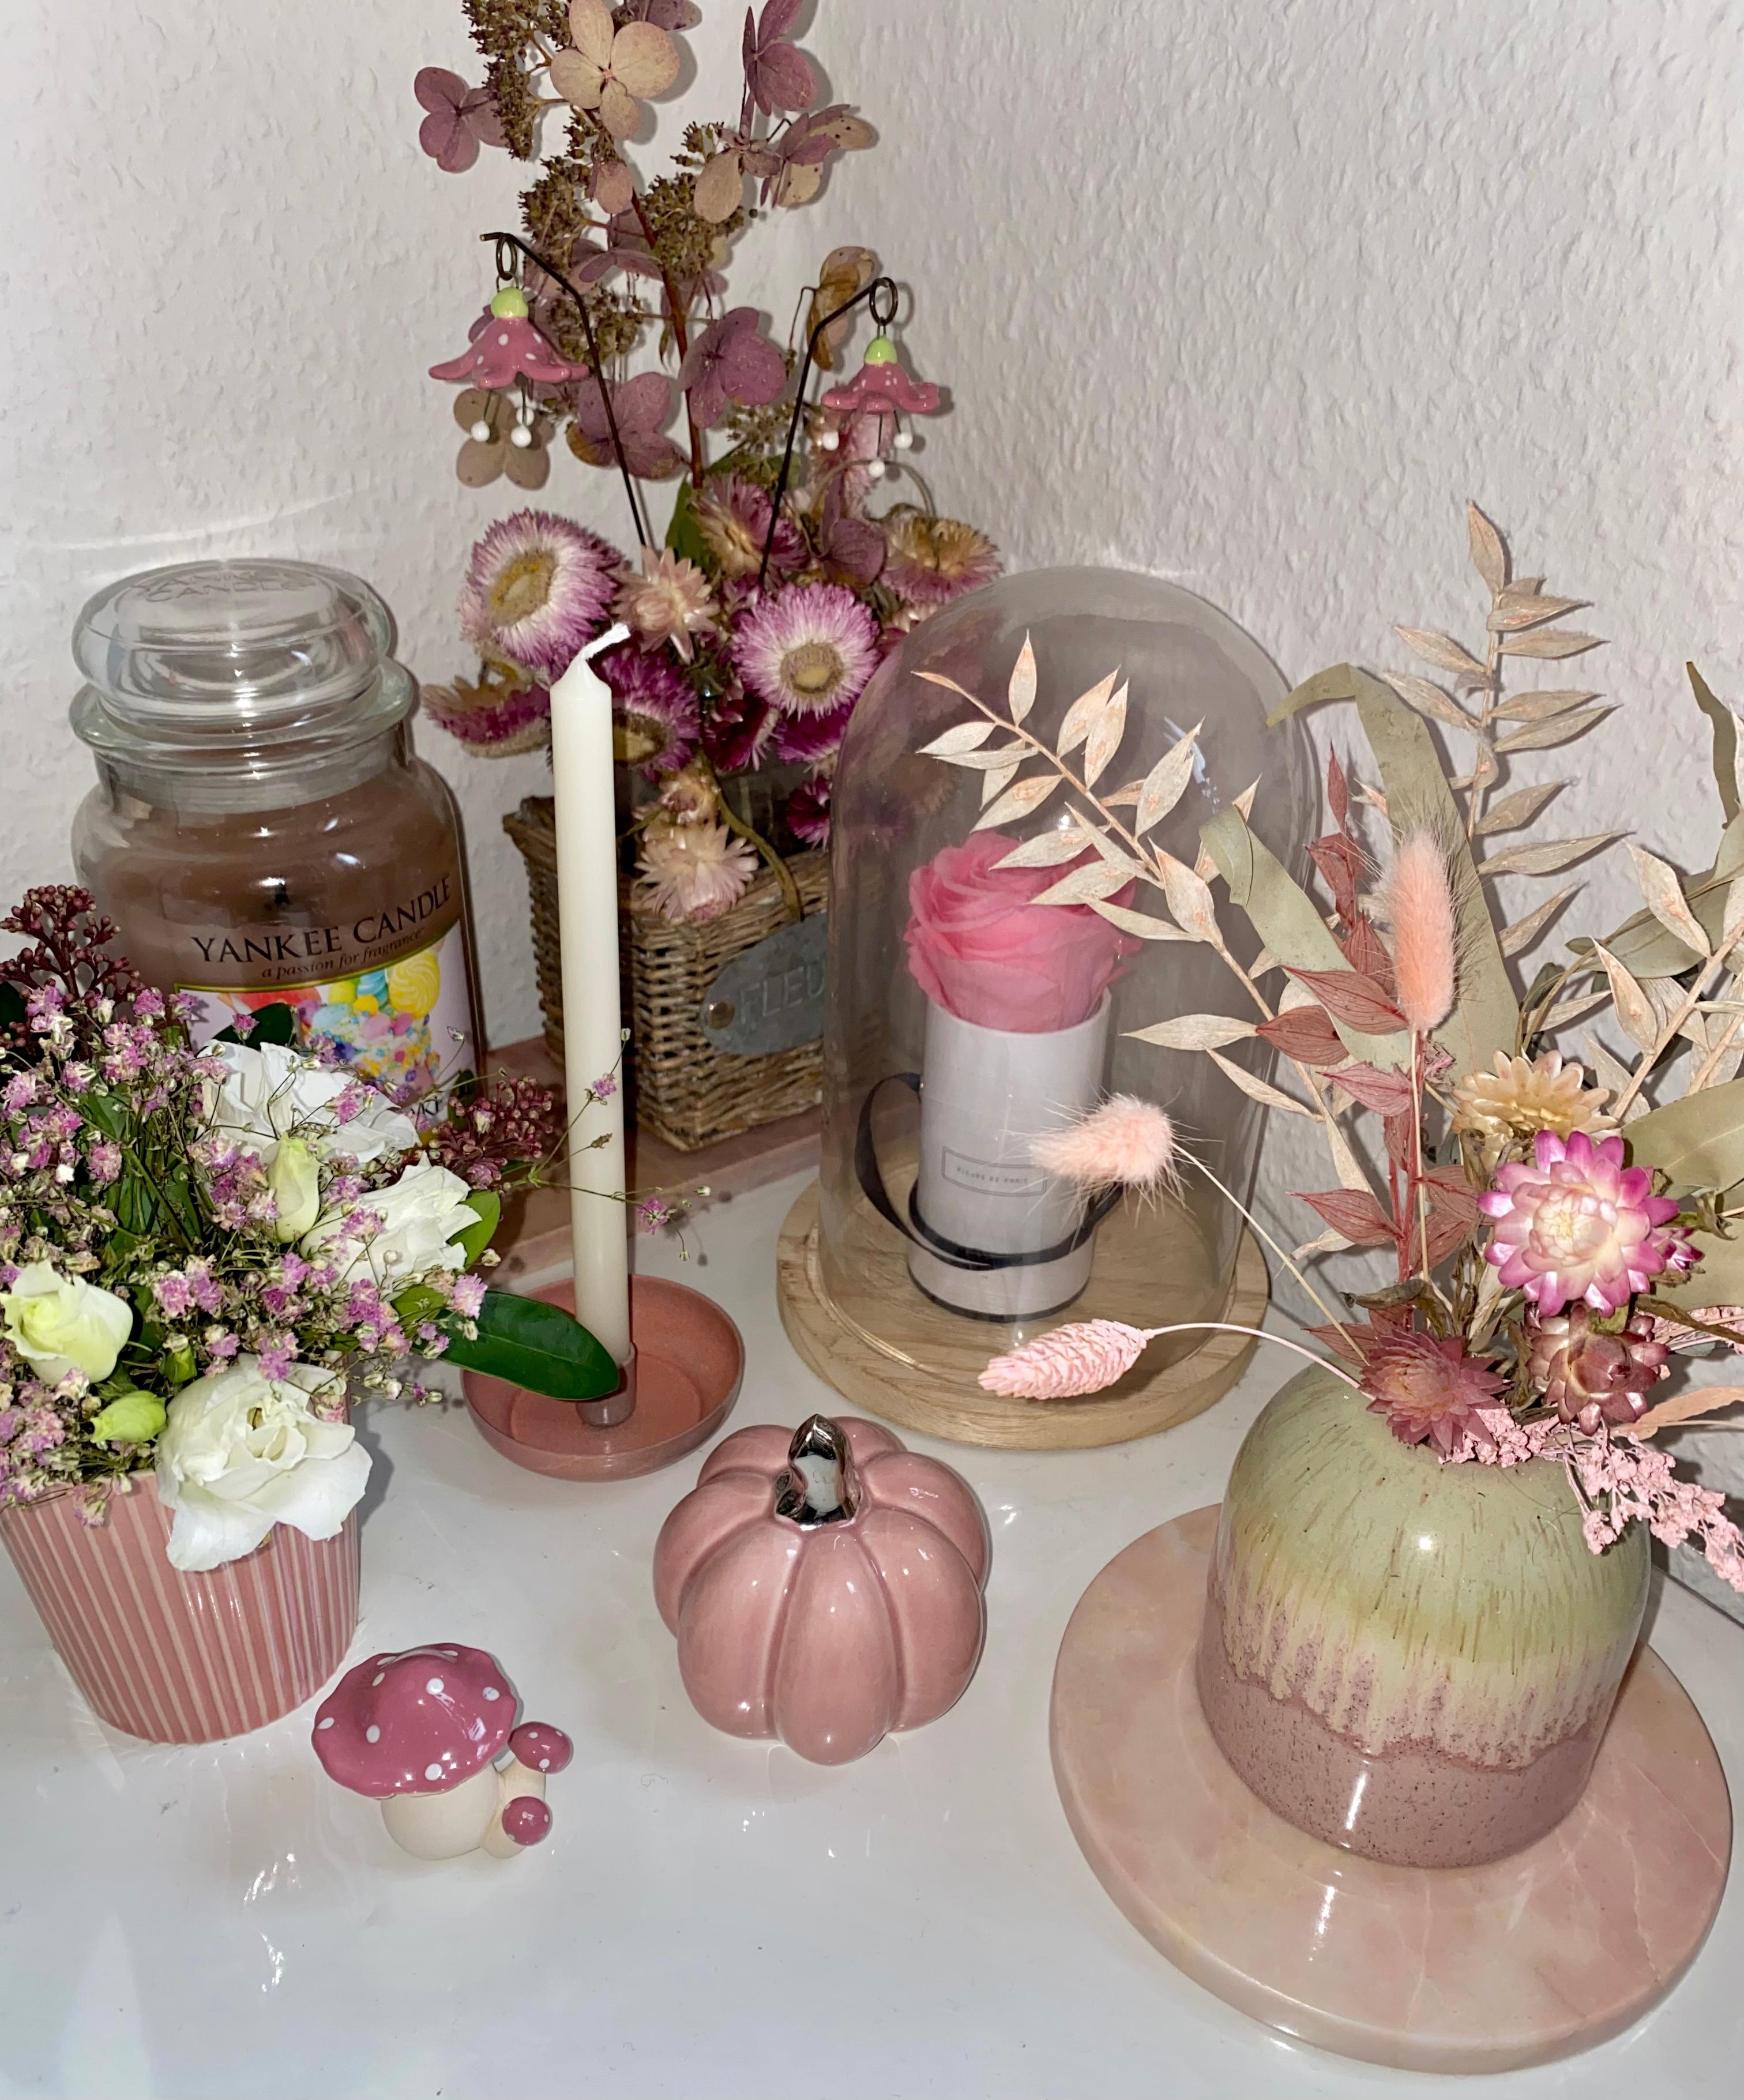 Meine süße #rosa #deko wurde um einen niedlichen Pilz und Blumenstecker vom Töpfermarkt erweitert 💕